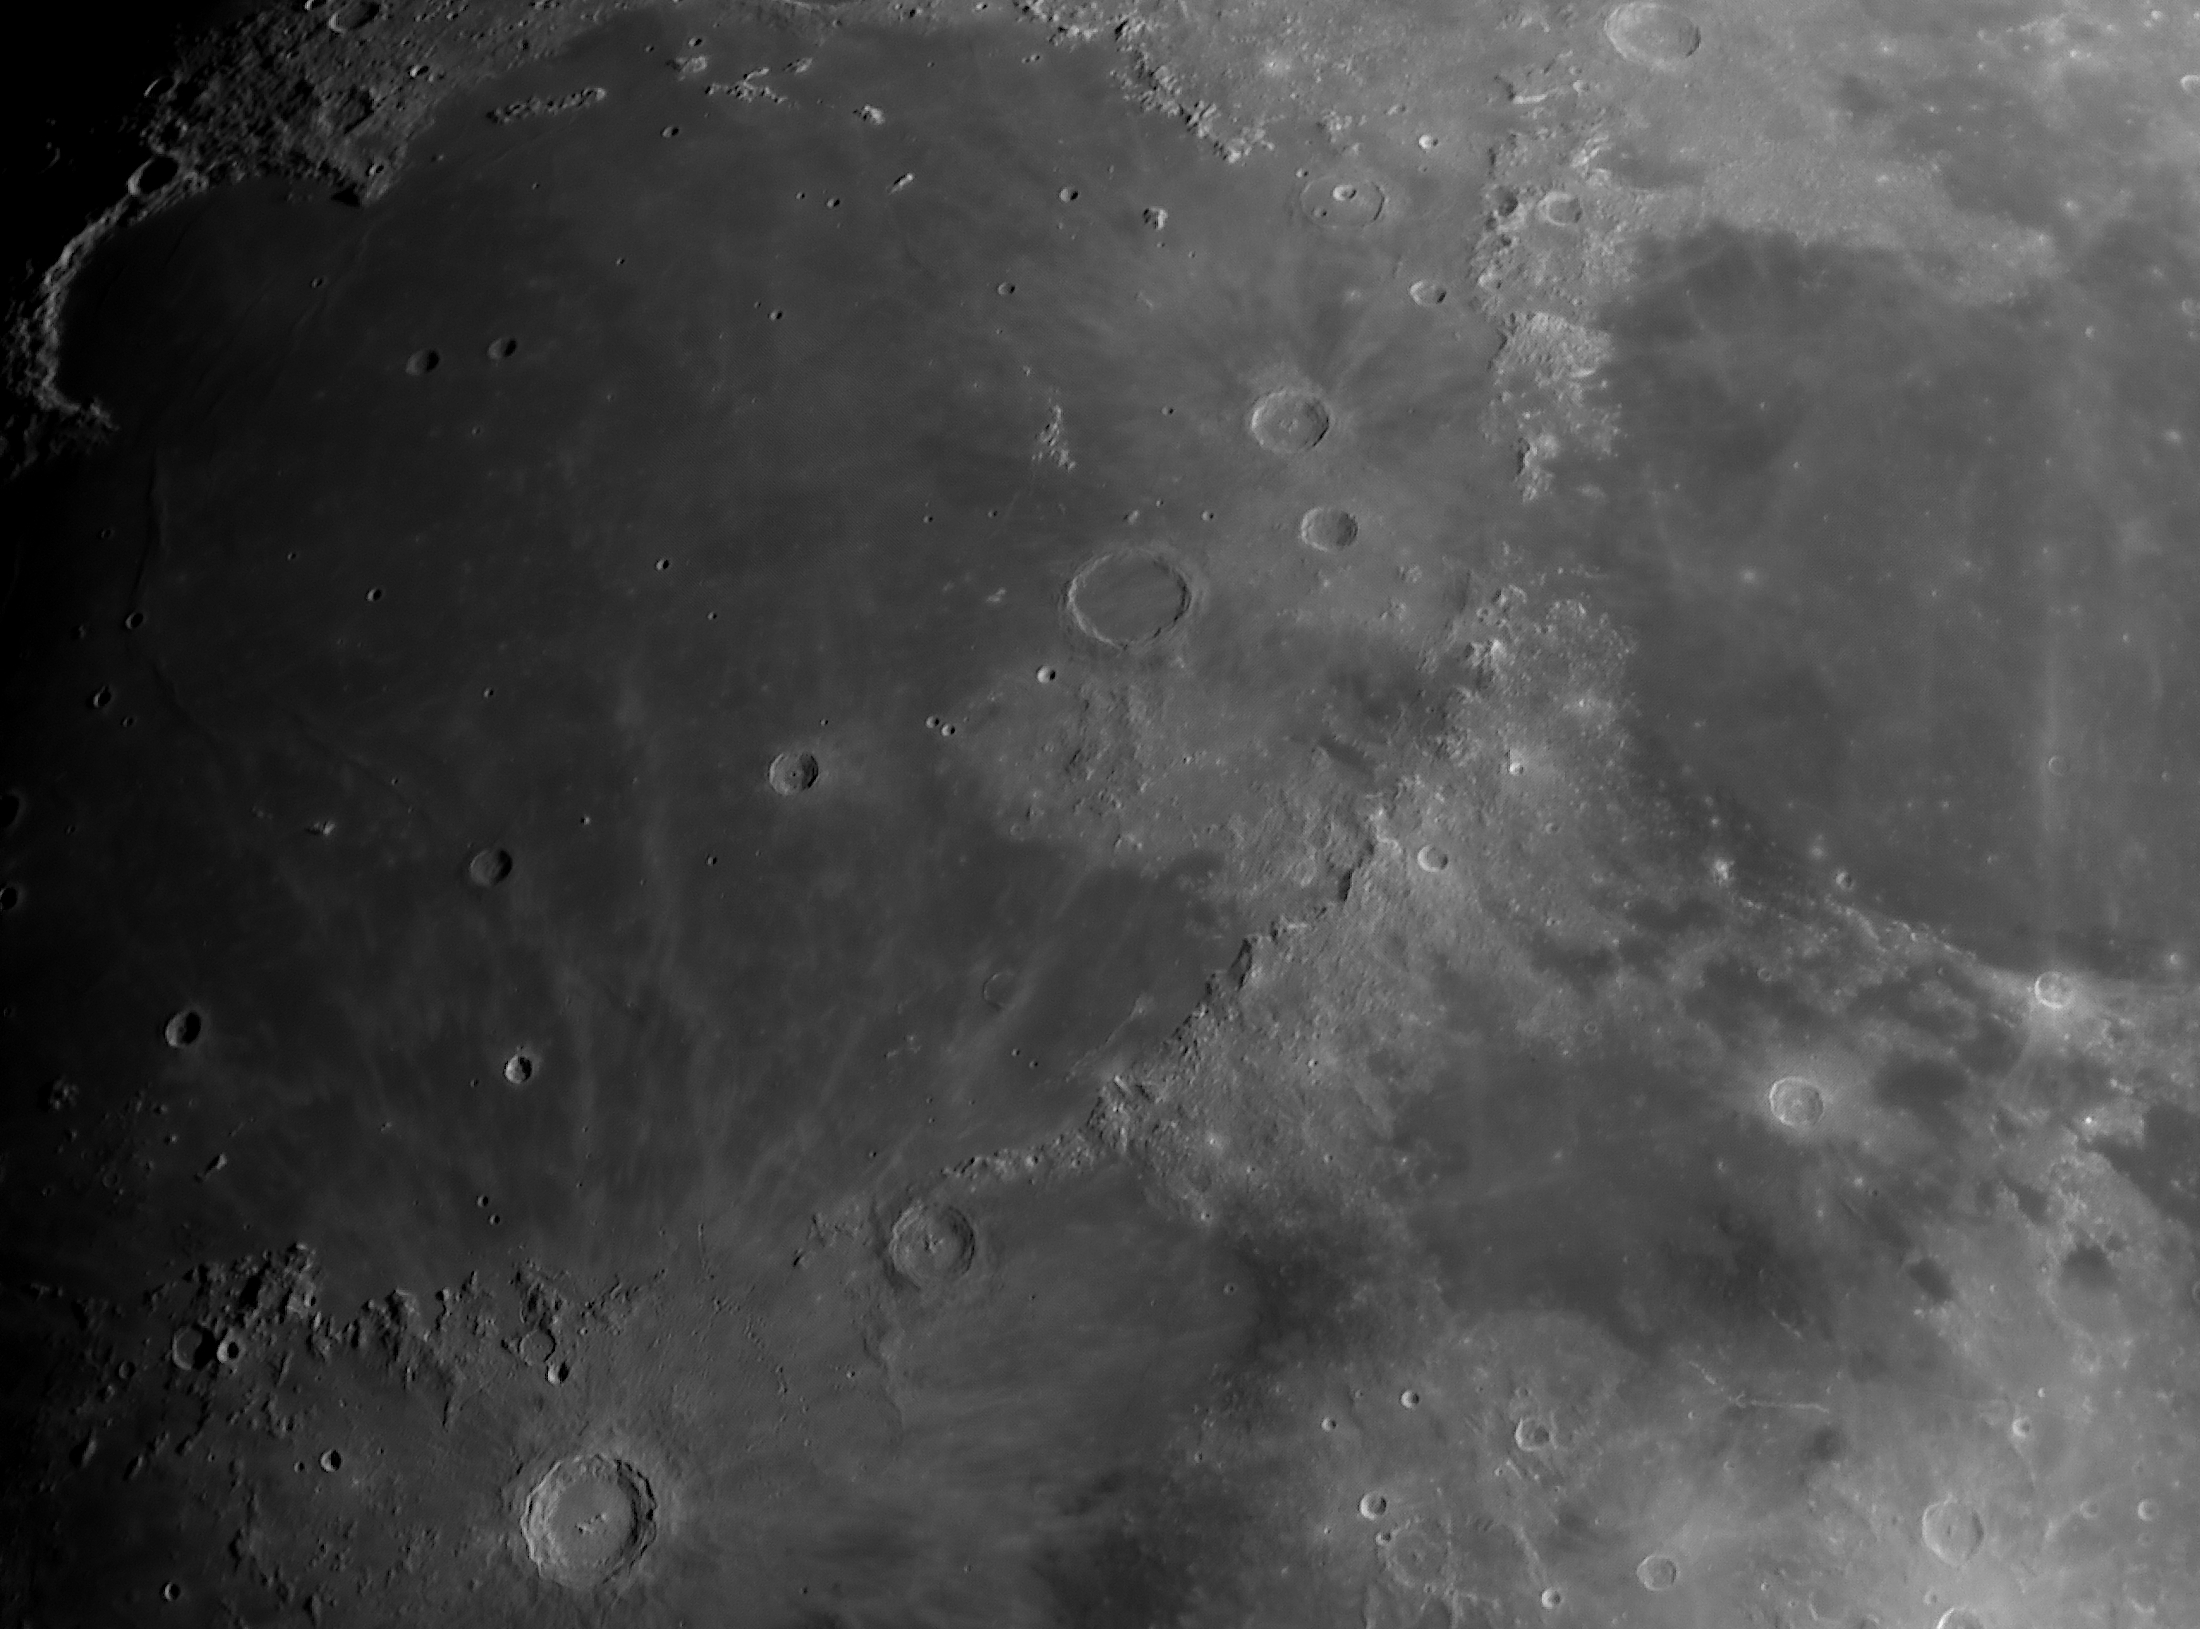 Copernicus,Eratosthenes,Archimedes,Arisillus,Montes Apenninus